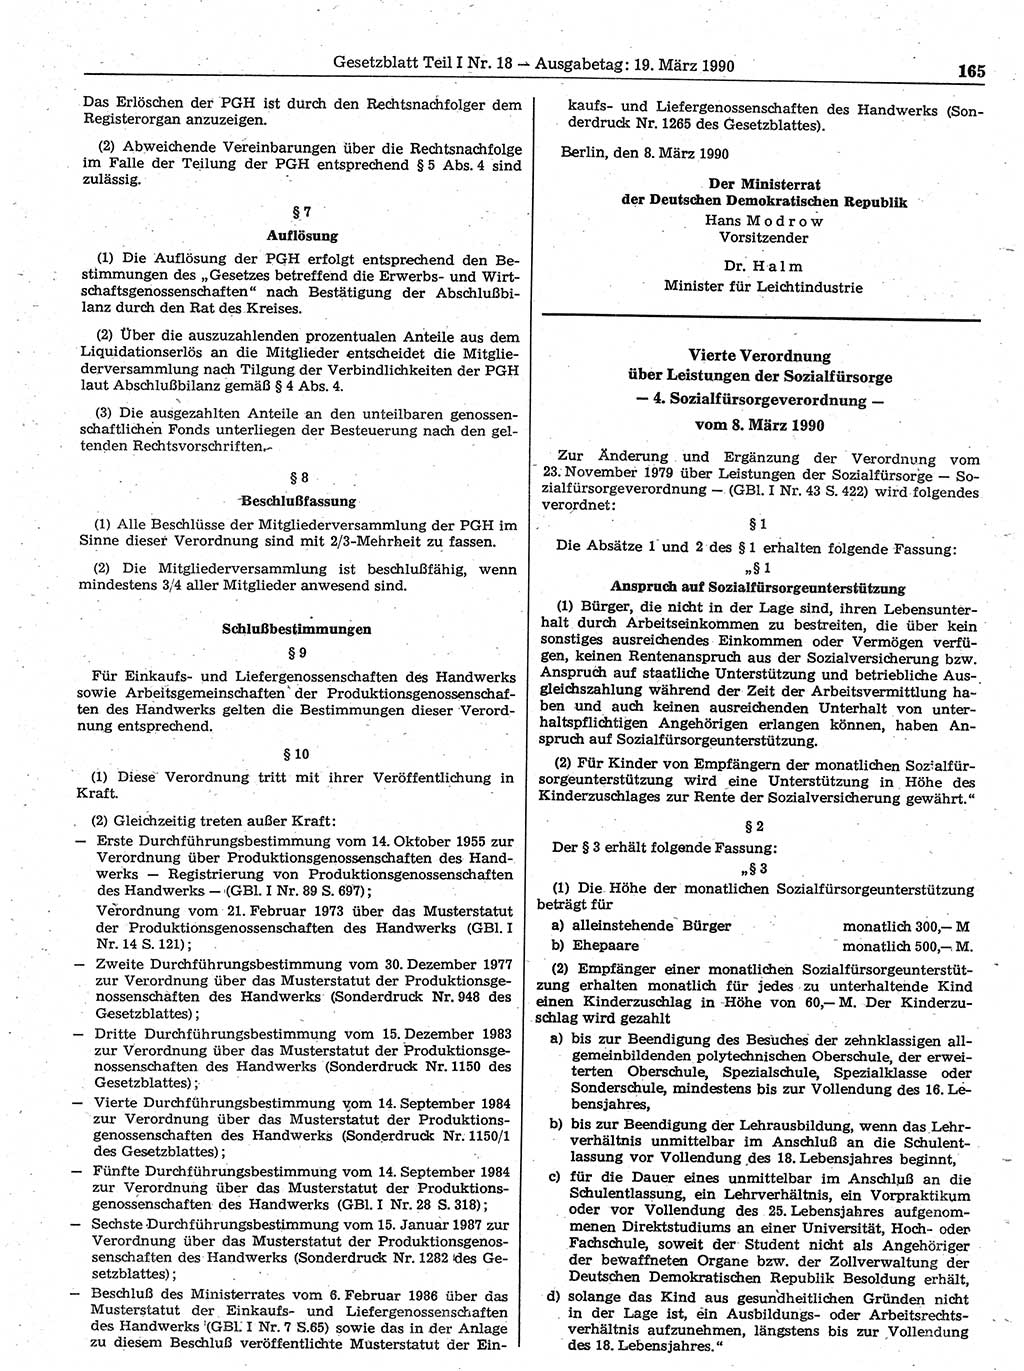 Gesetzblatt (GBl.) der Deutschen Demokratischen Republik (DDR) Teil Ⅰ 1990, Seite 165 (GBl. DDR Ⅰ 1990, S. 165)